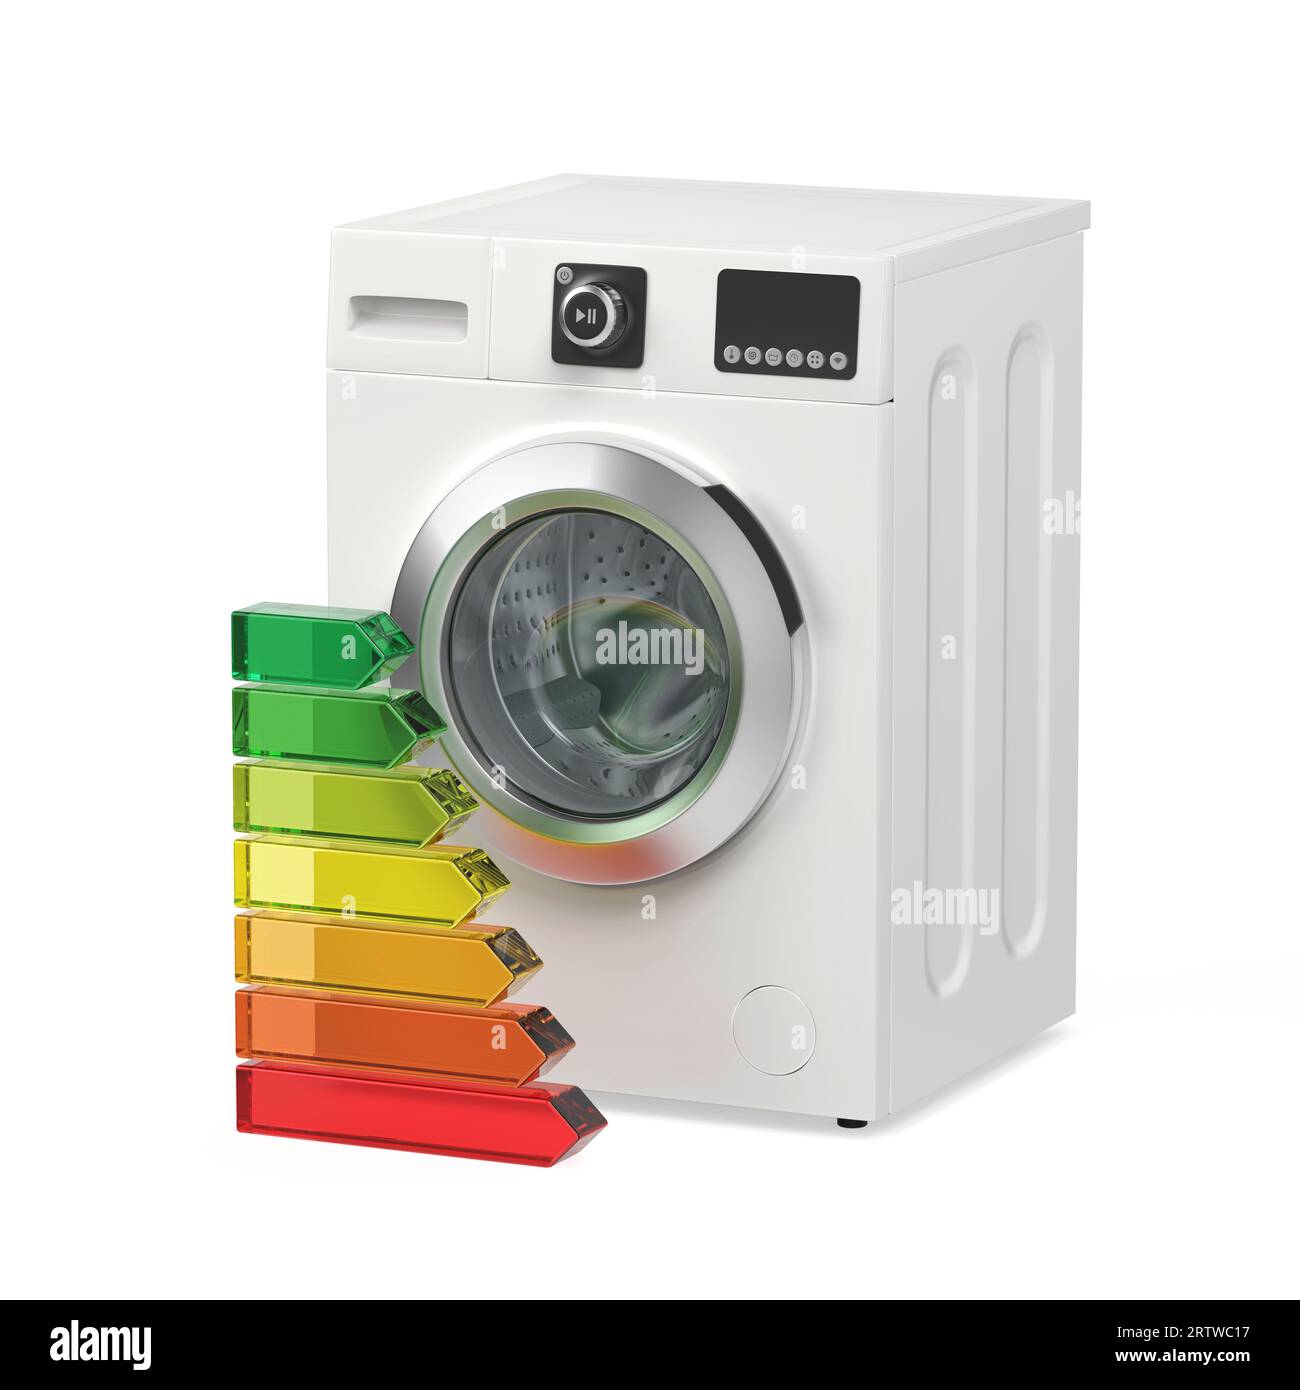 Waschmaschinen- und Energieeffizienzstufen auf weißem Hintergrund  Stockfotografie - Alamy